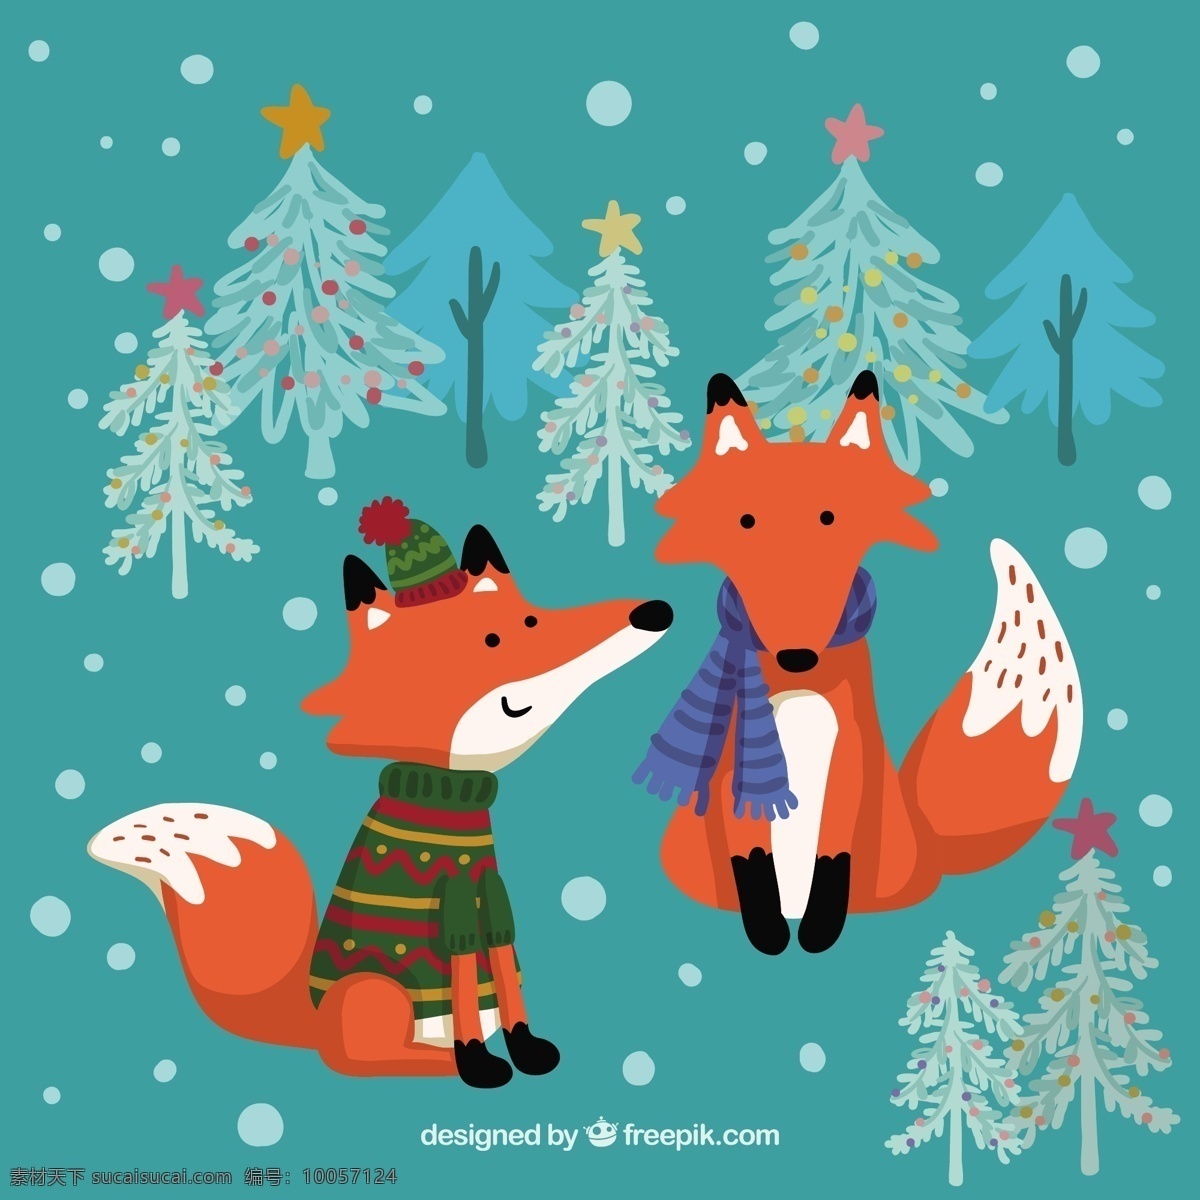 冬天 狐狸的插图 自然 雪 卡通 森林 狐狸 插图 青色 天蓝色